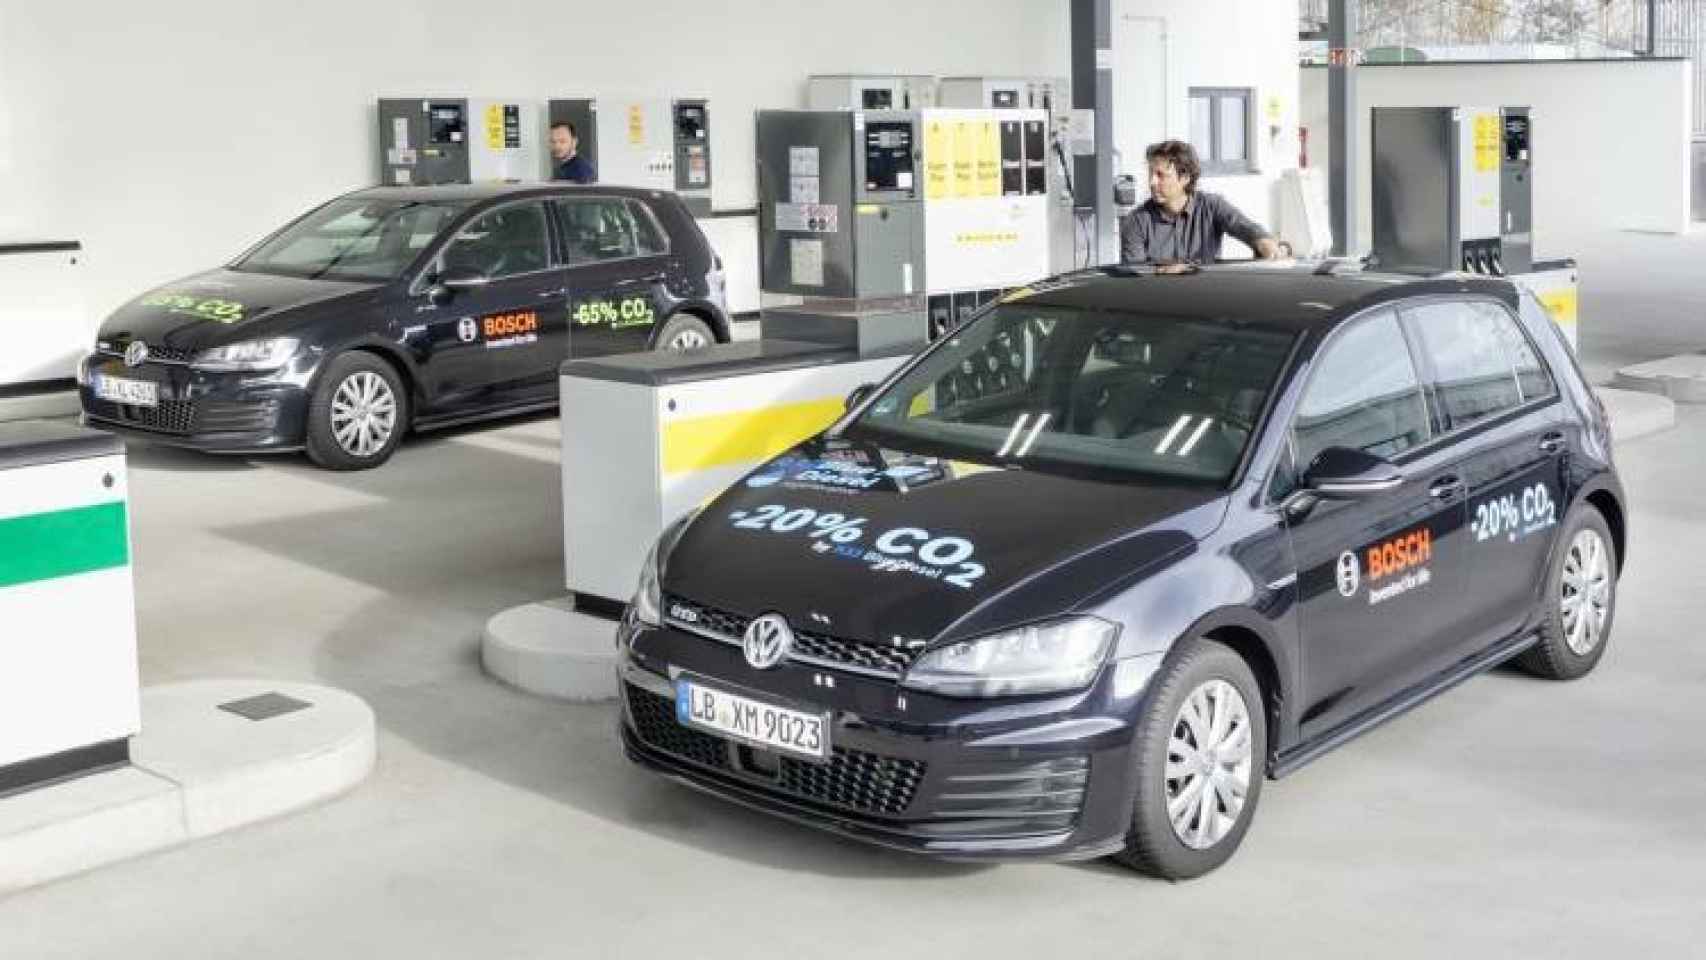 Vehículos Volkswagen en la gasolinera con dispensador de R33